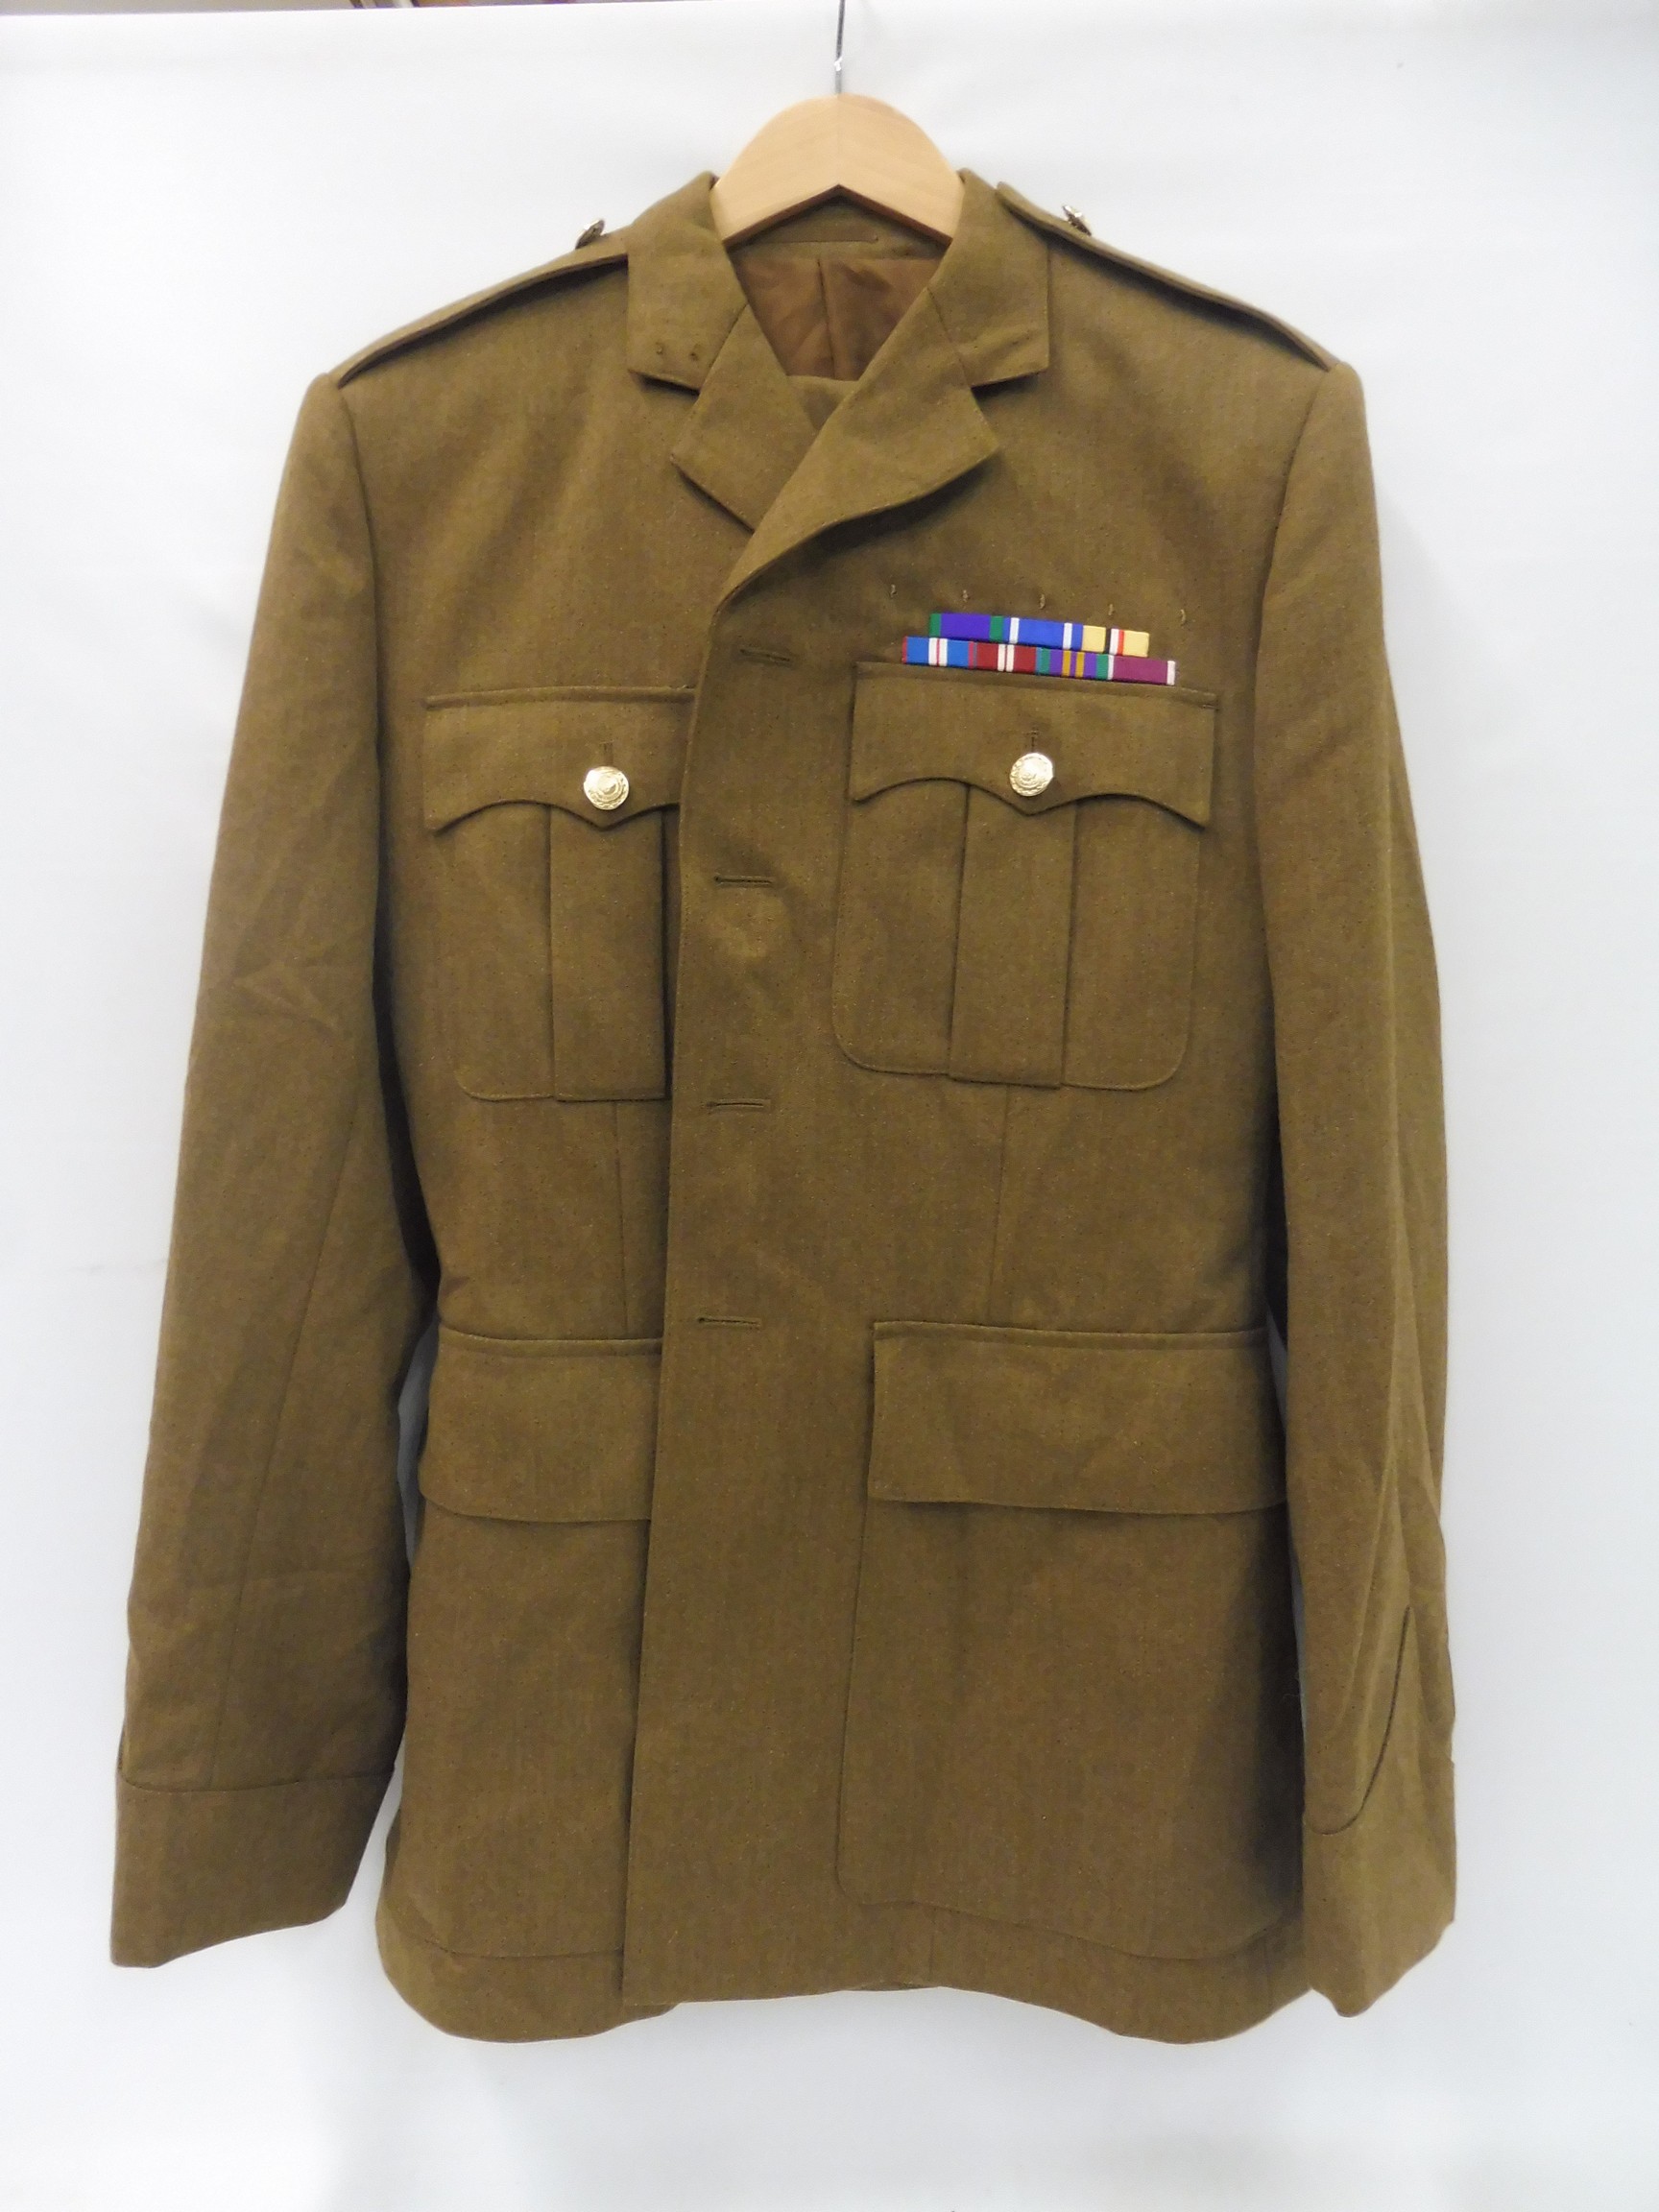 An F.A.D. No.2 uniform, Royal Logistics Corps, jacket size 182/112/96, trouser size 78/84/100, no